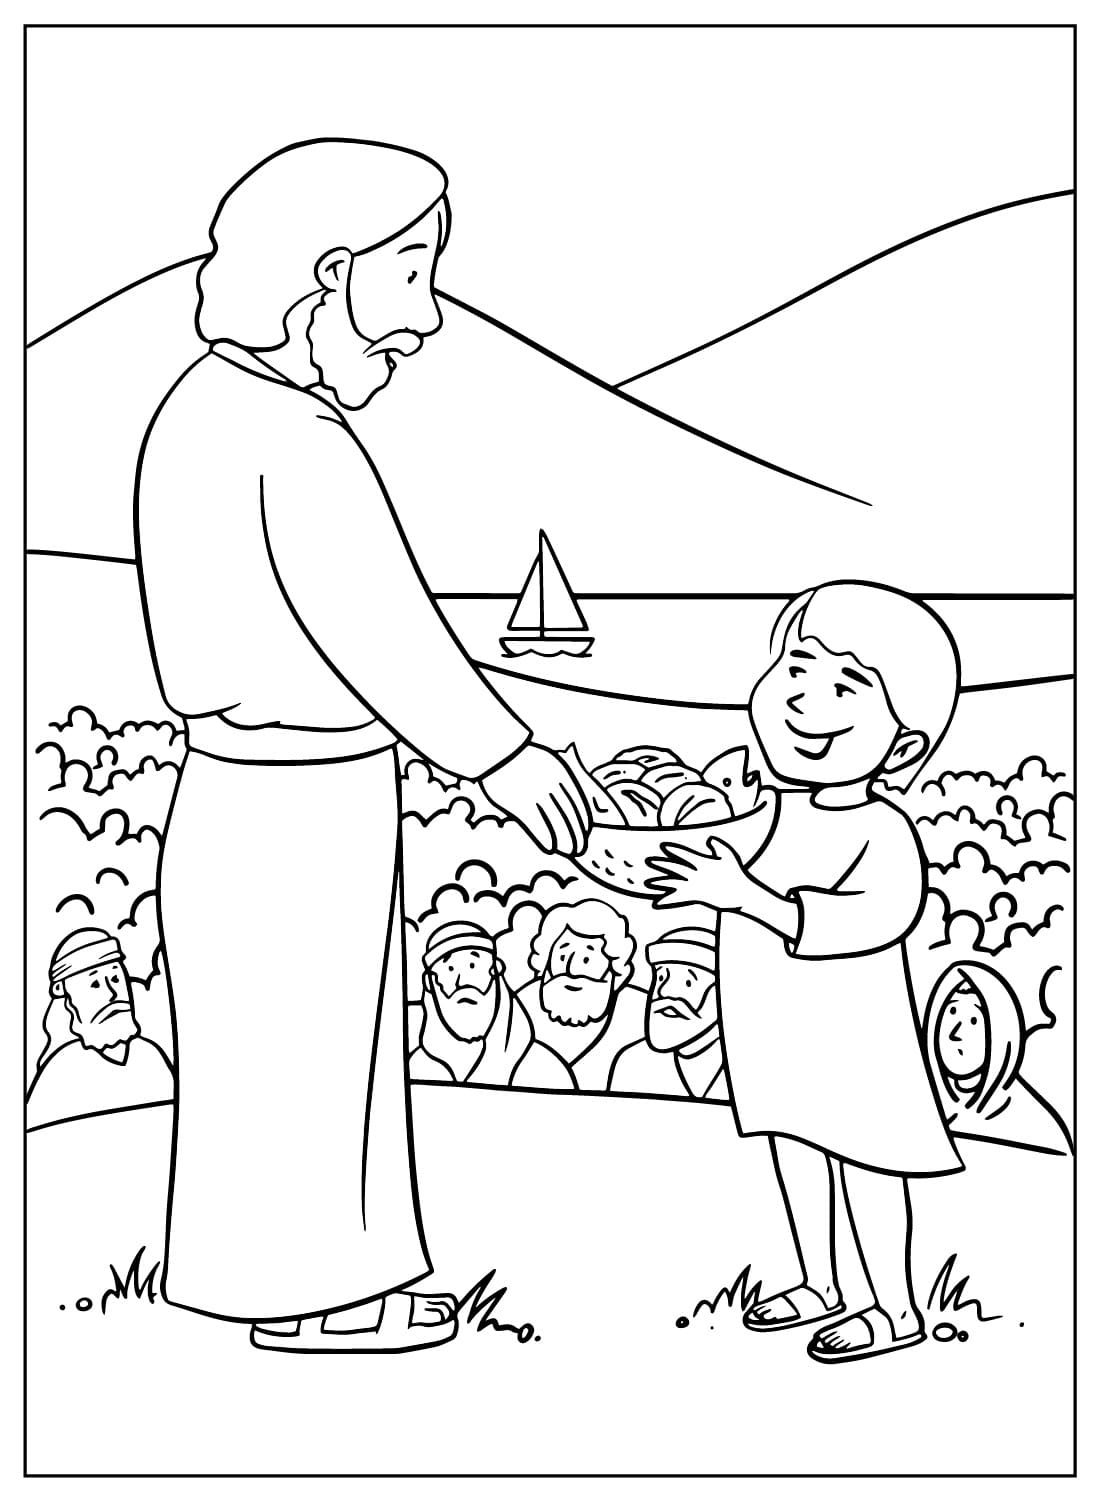 Gesù moltiplicò i pani affinché 5,000 persone mangiassero da Gesù